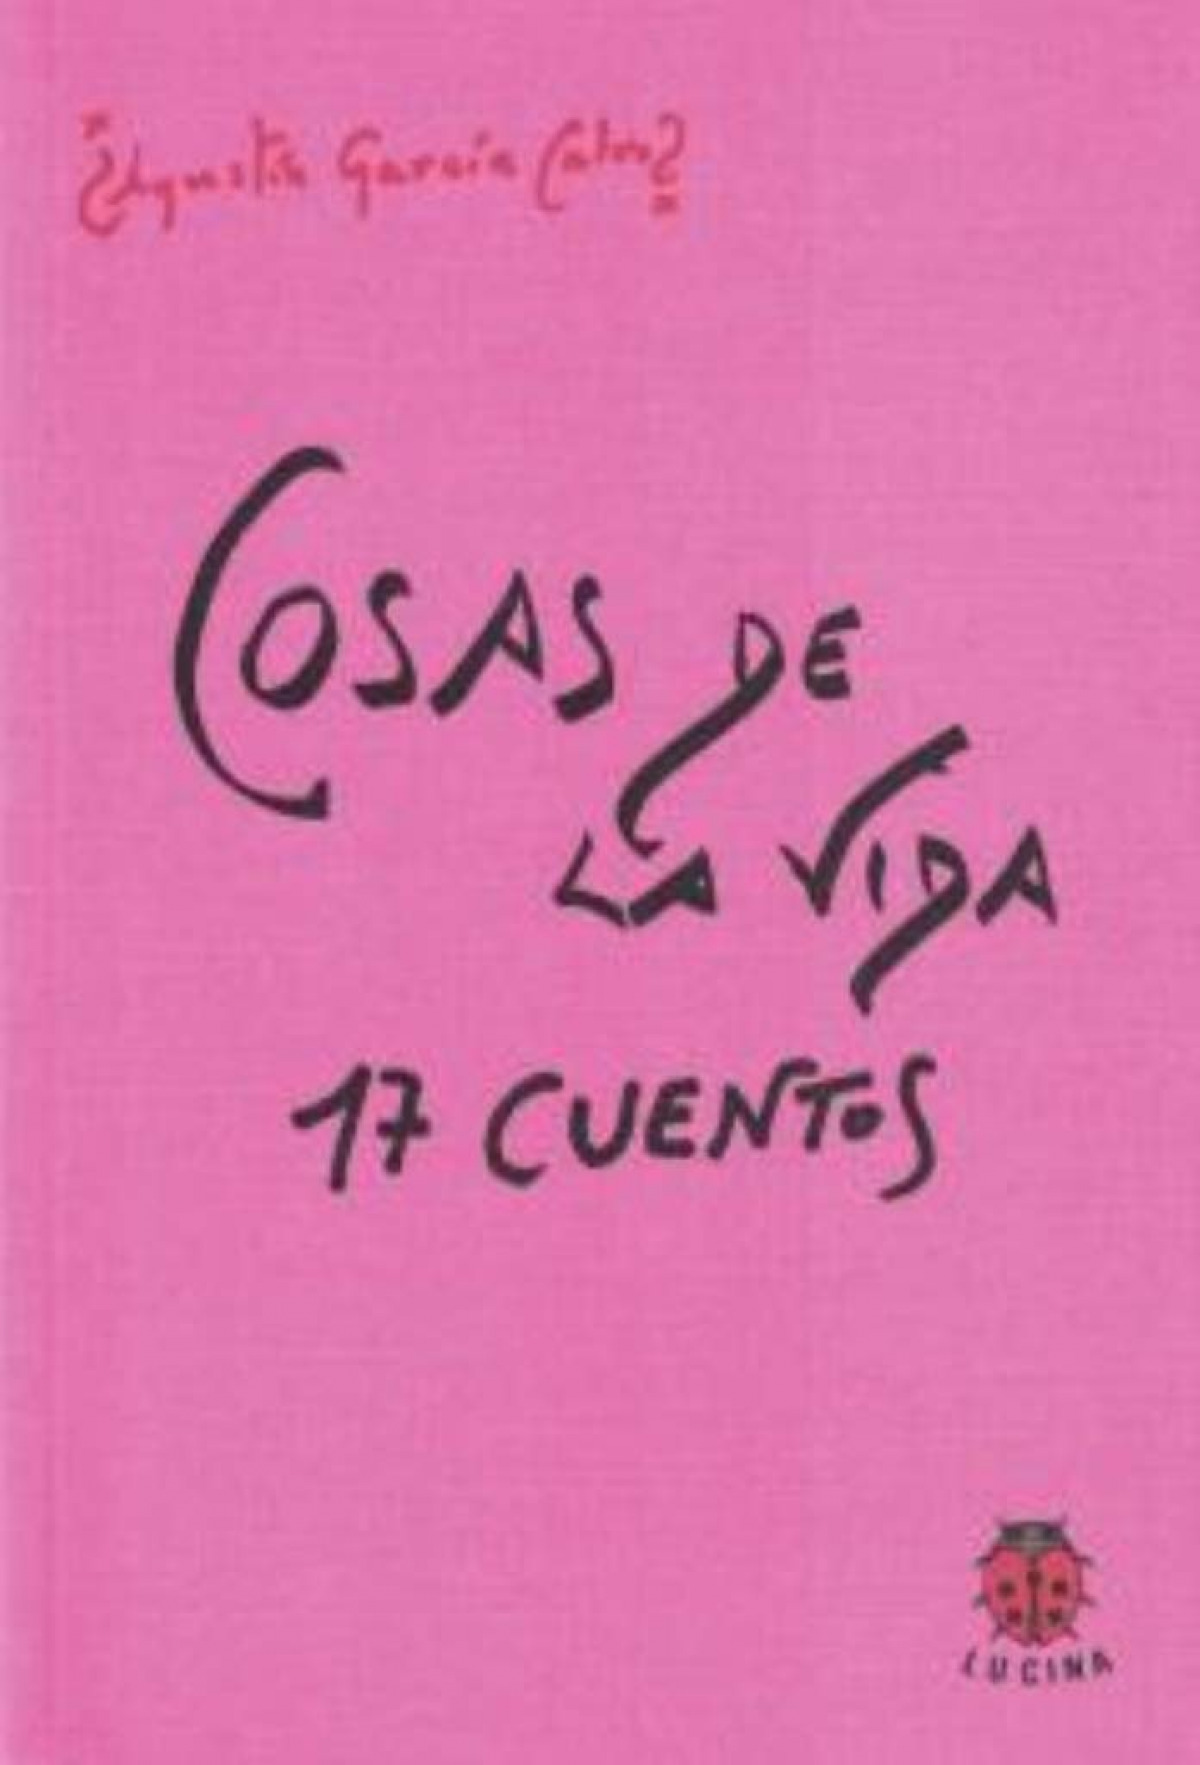 Cosas de la vida. 17 cuentos - Garcia Calvo, A.